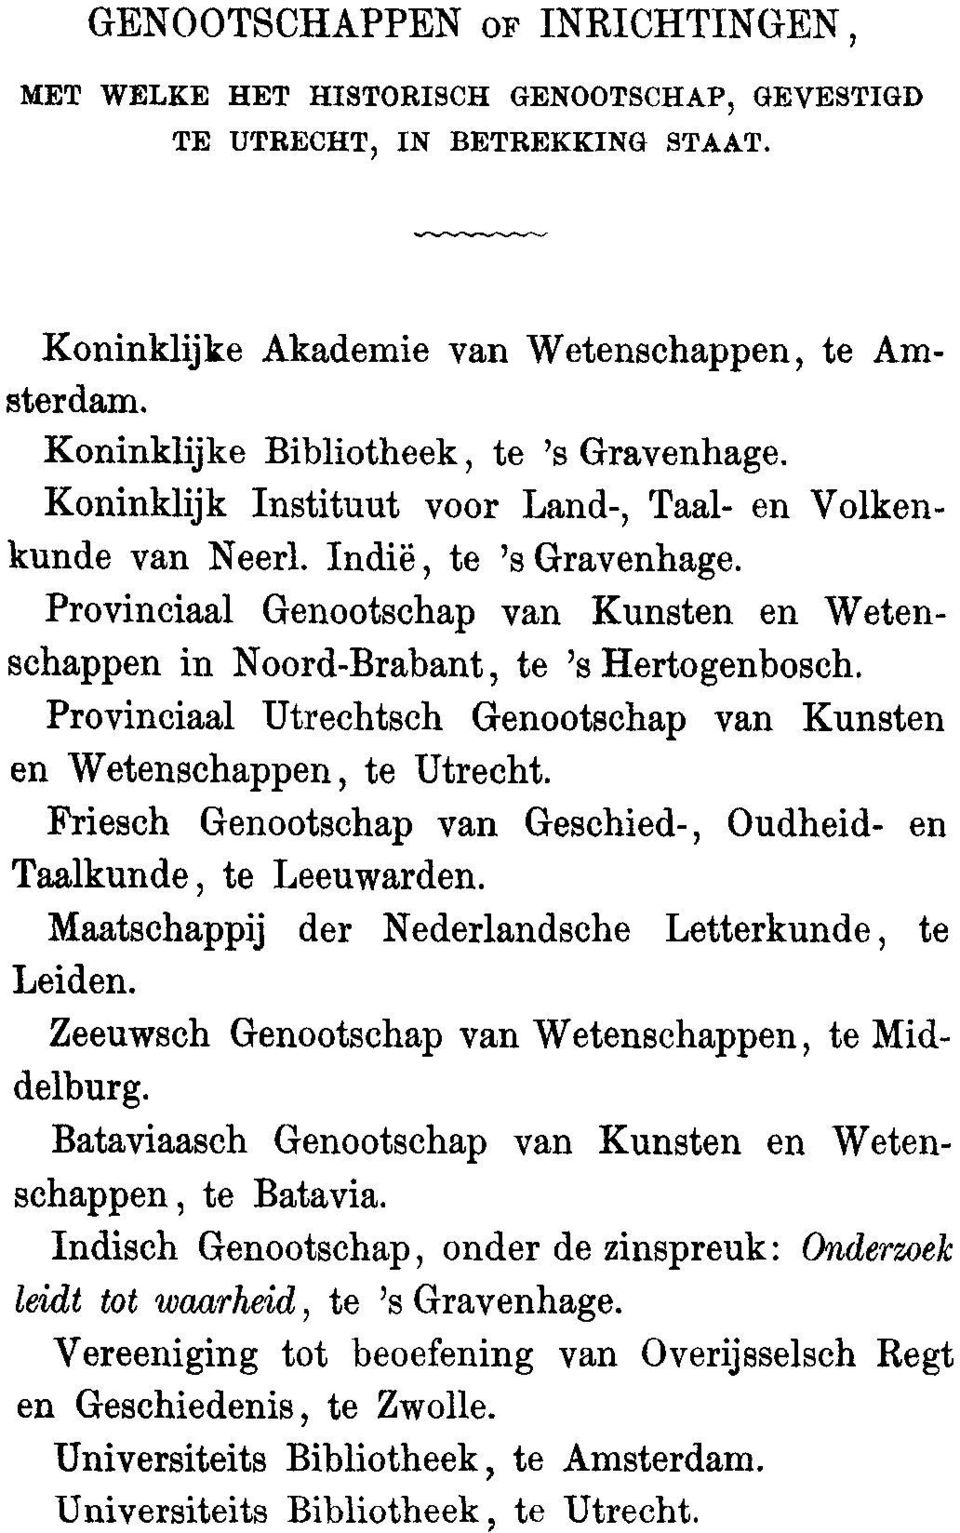 Provinciaal Genootschap van Kunsten en Wetenschappen in Noord-Brabant, to 's Hertogenbosch. Provinciaal Utrechtsch Genootschap van Kunsten en Wetenschappen, to Utrecht.